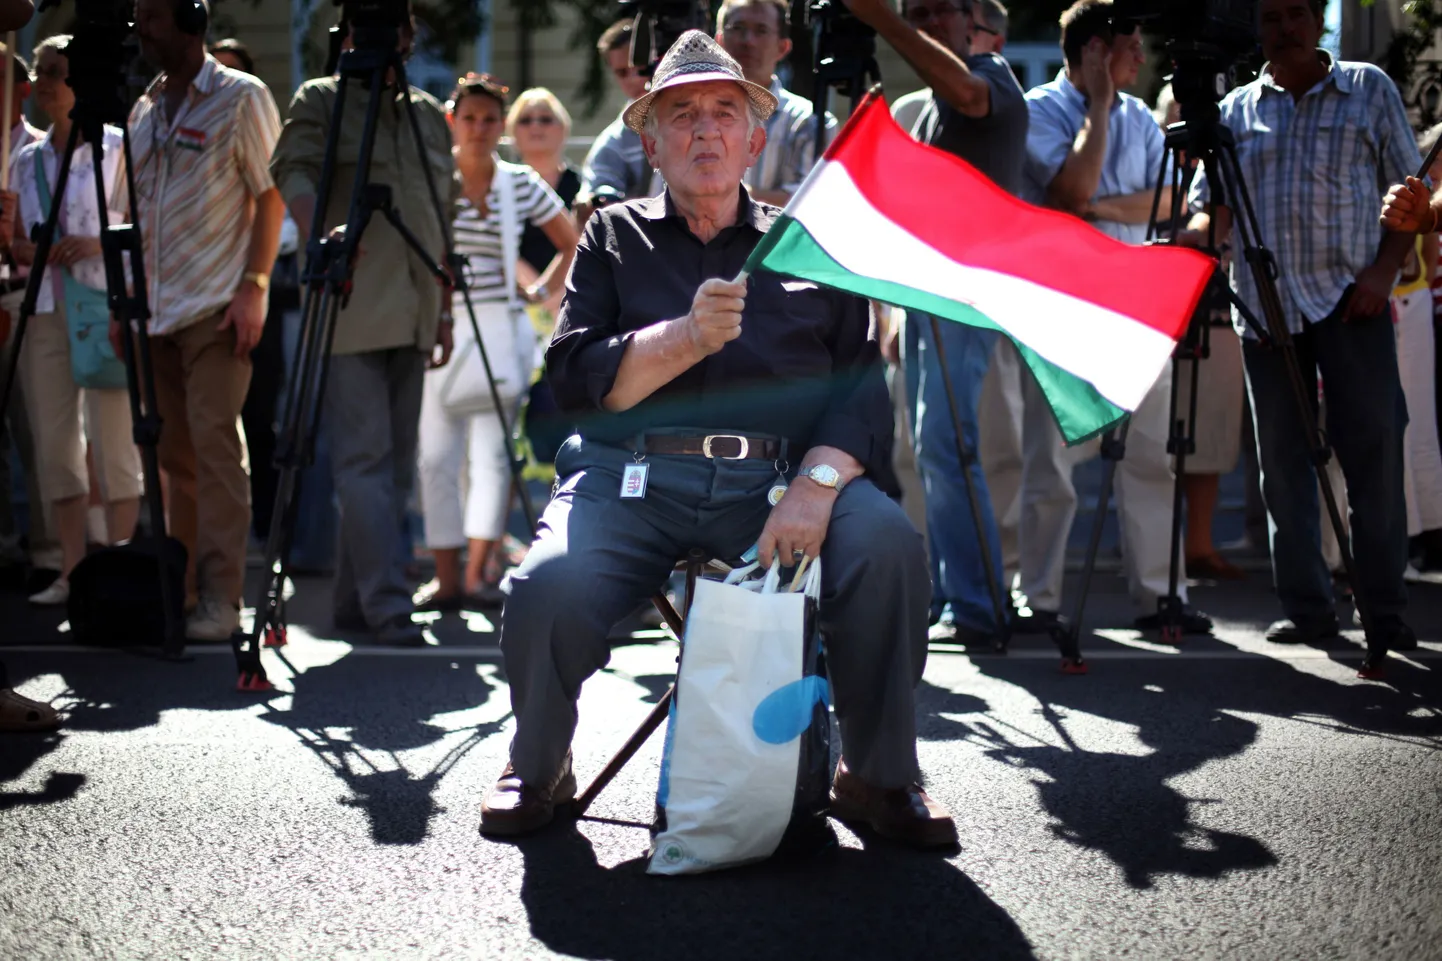 Ungarlane Budapestis Slovakkia saatkonna ees naabermaa keeleseaduse vastu meelt avaldamas.